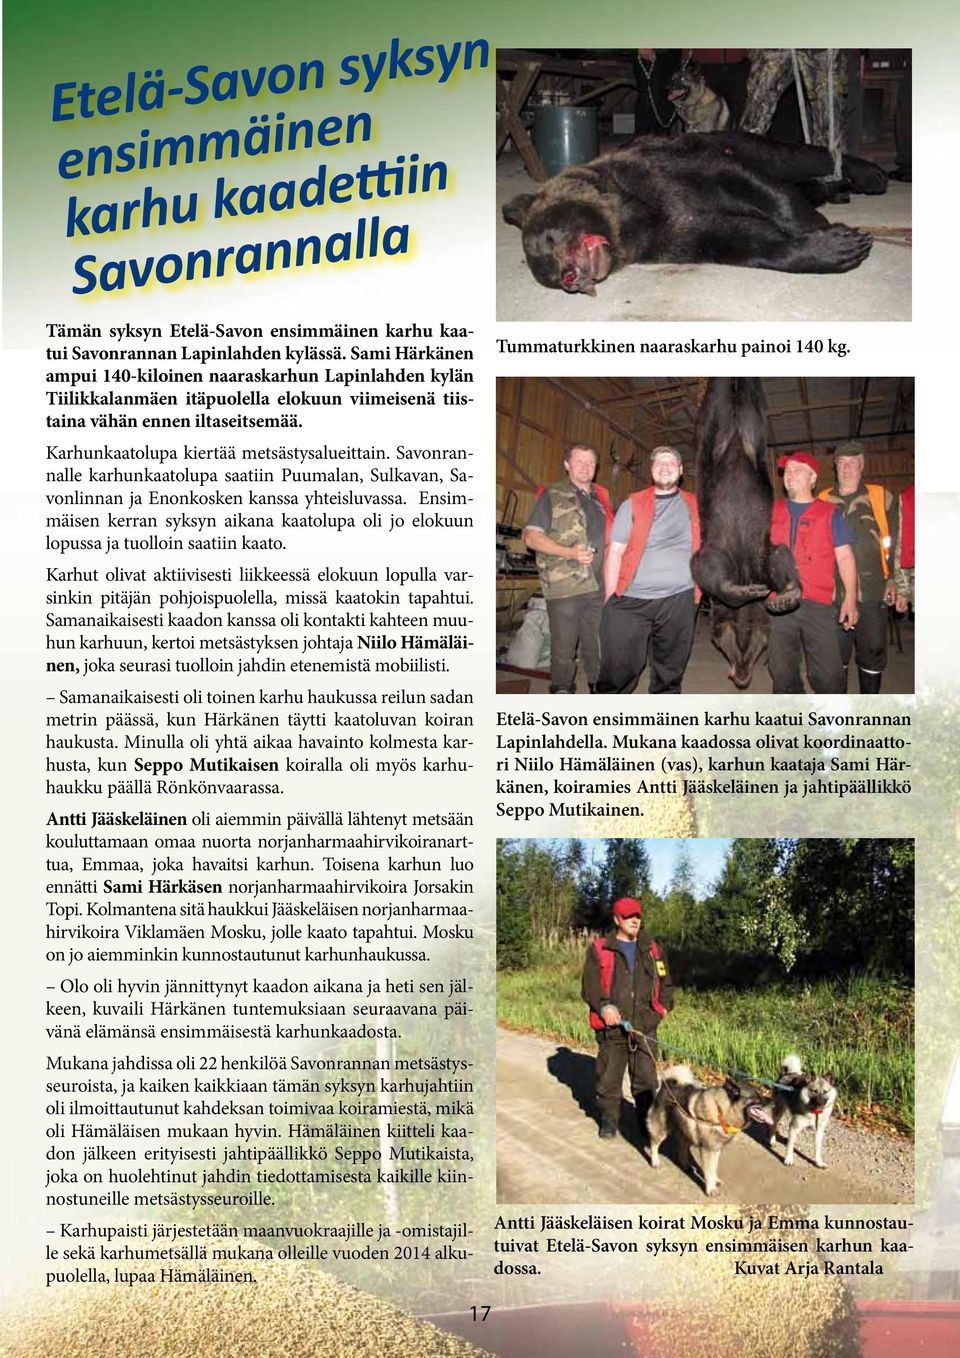 Savonrannalle karhunkaatolupa saatiin Puumalan, Sulkavan, Savonlinnan ja Enonkosken kanssa yhteisluvassa. Ensimmäisen kerran syksyn aikana kaatolupa oli jo elokuun lopussa ja tuolloin saatiin kaato.